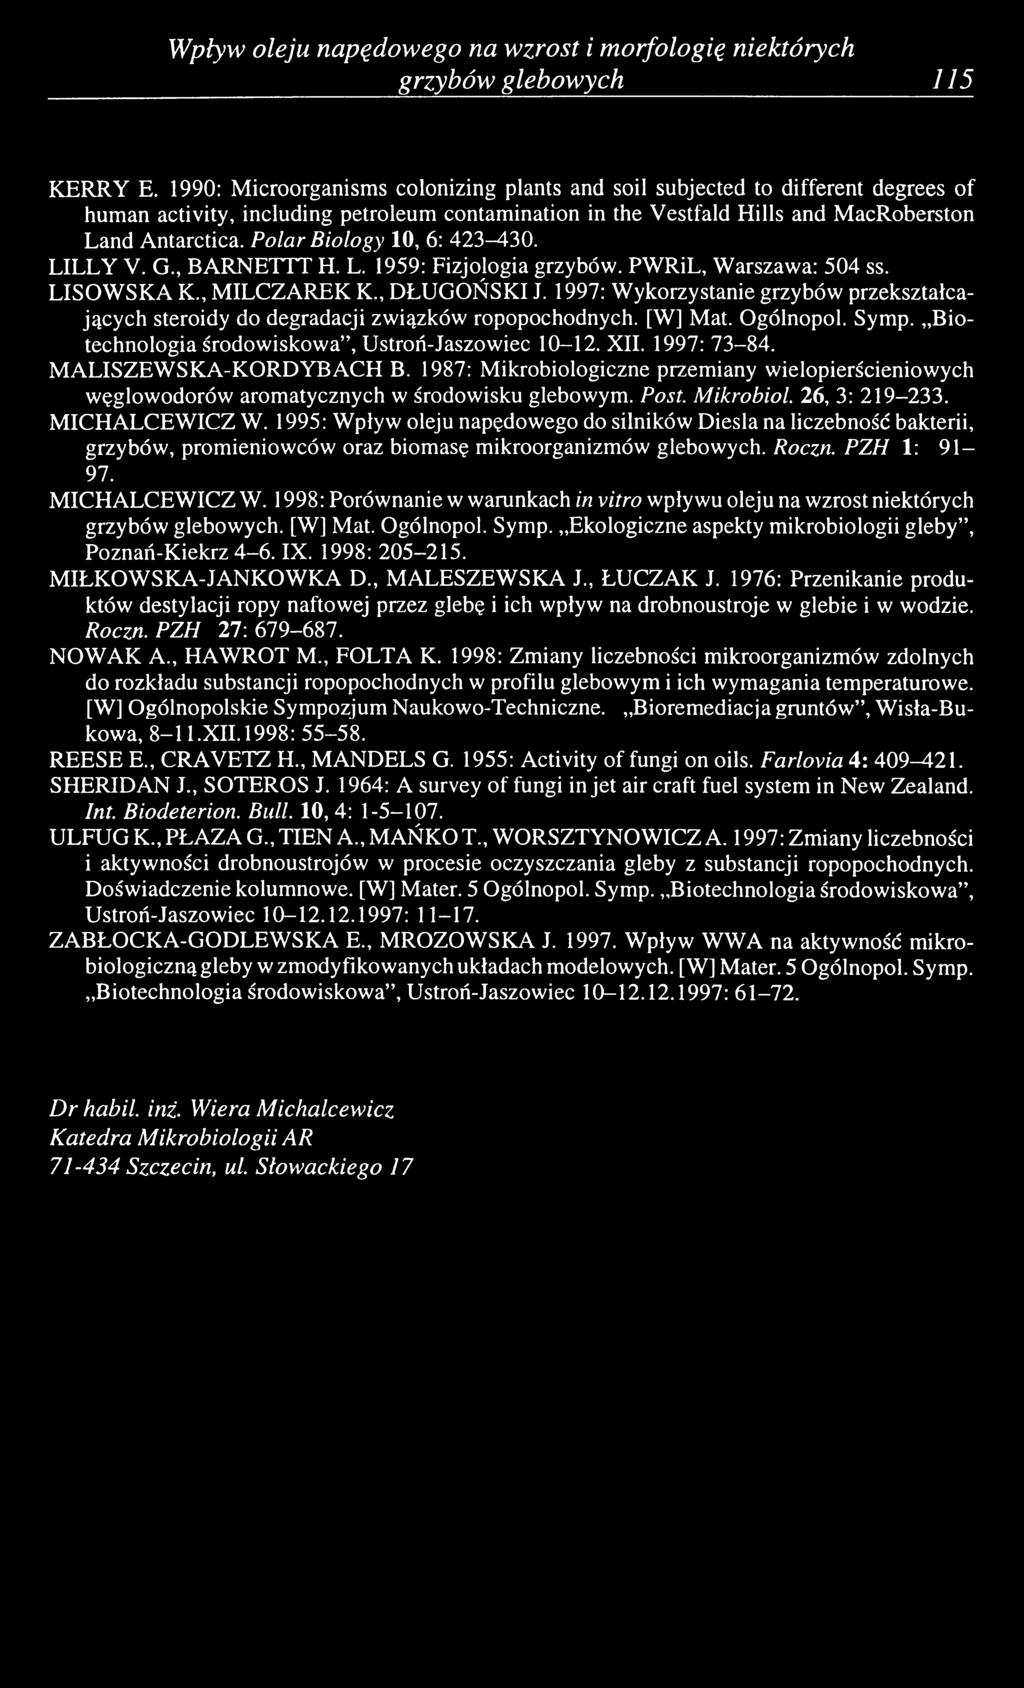 Polar Biology 10, 6 : 423-^-30. LILLY V. G., BARNETTT H. L. 1959: Fizjologia grzybów. PWRiL, Warszawa: 504 ss. LISOWSKA K., MILCZAREK K., DŁUGOŃSKI J.